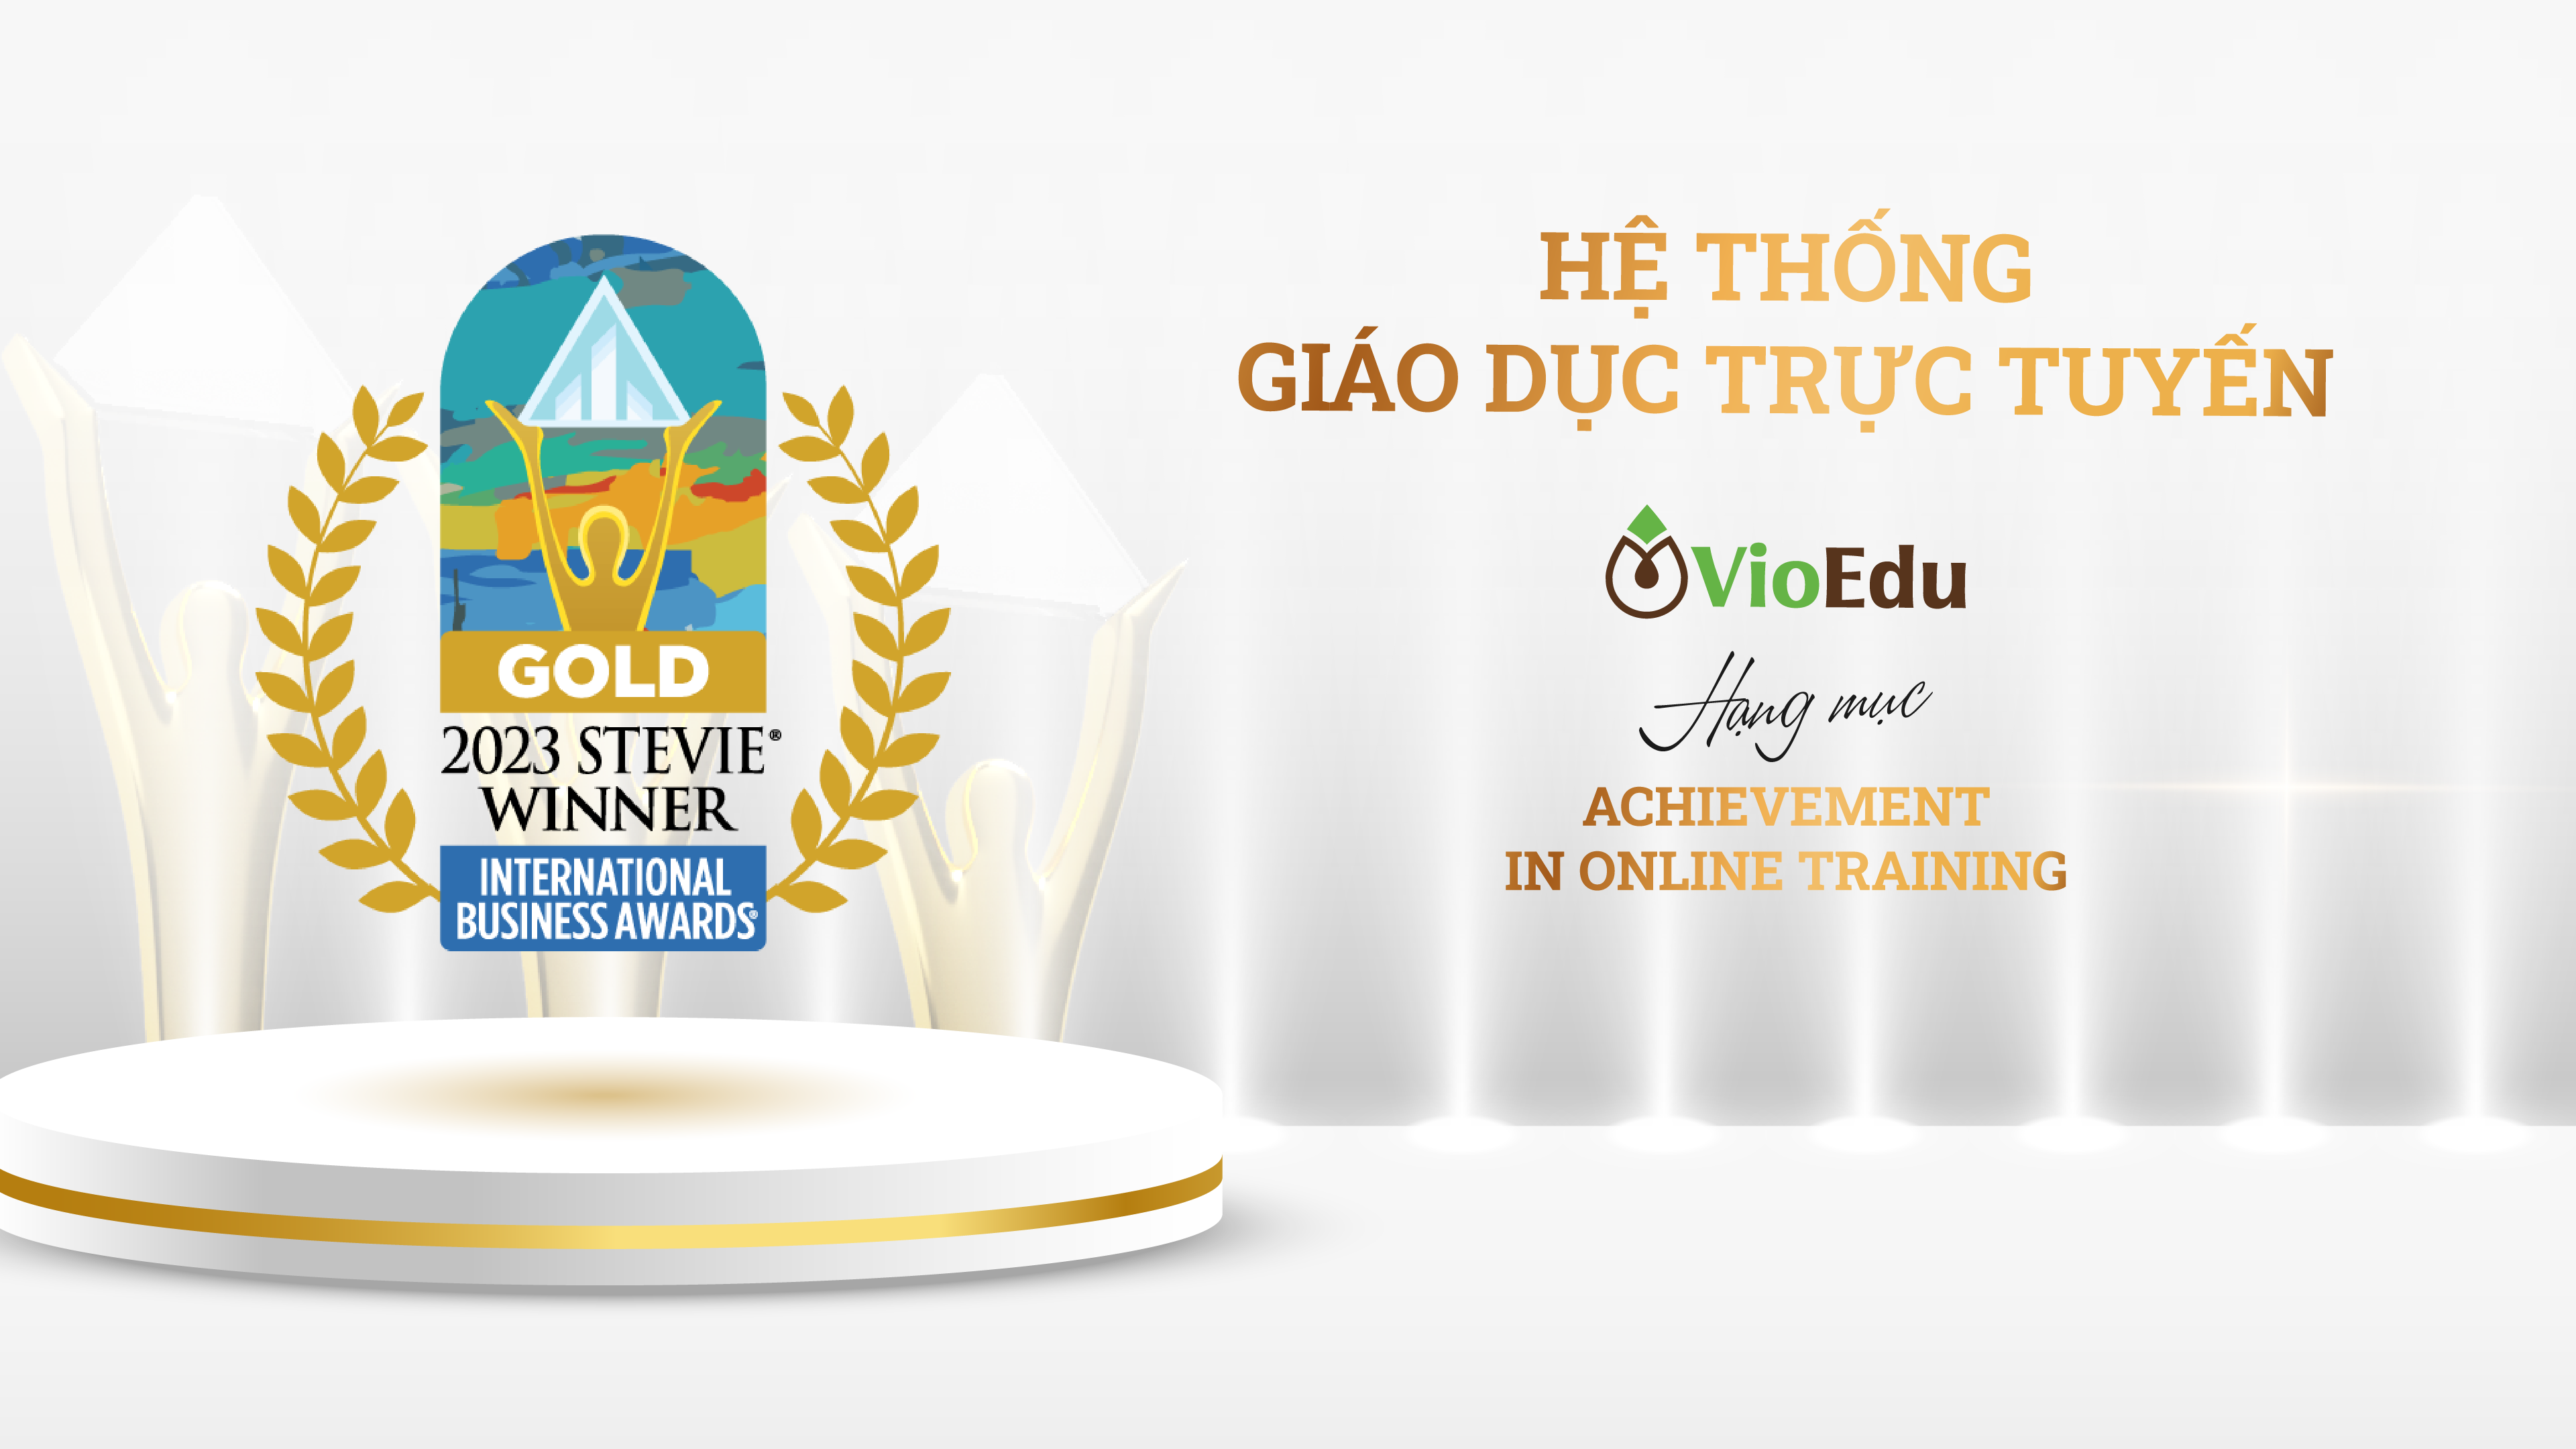 Hệ thống giáo dục trực tuyến – VioEdu đạt Giải Vàng – Giải thưởng Kinh doanh quốc tế 2023 (International Business Awards)